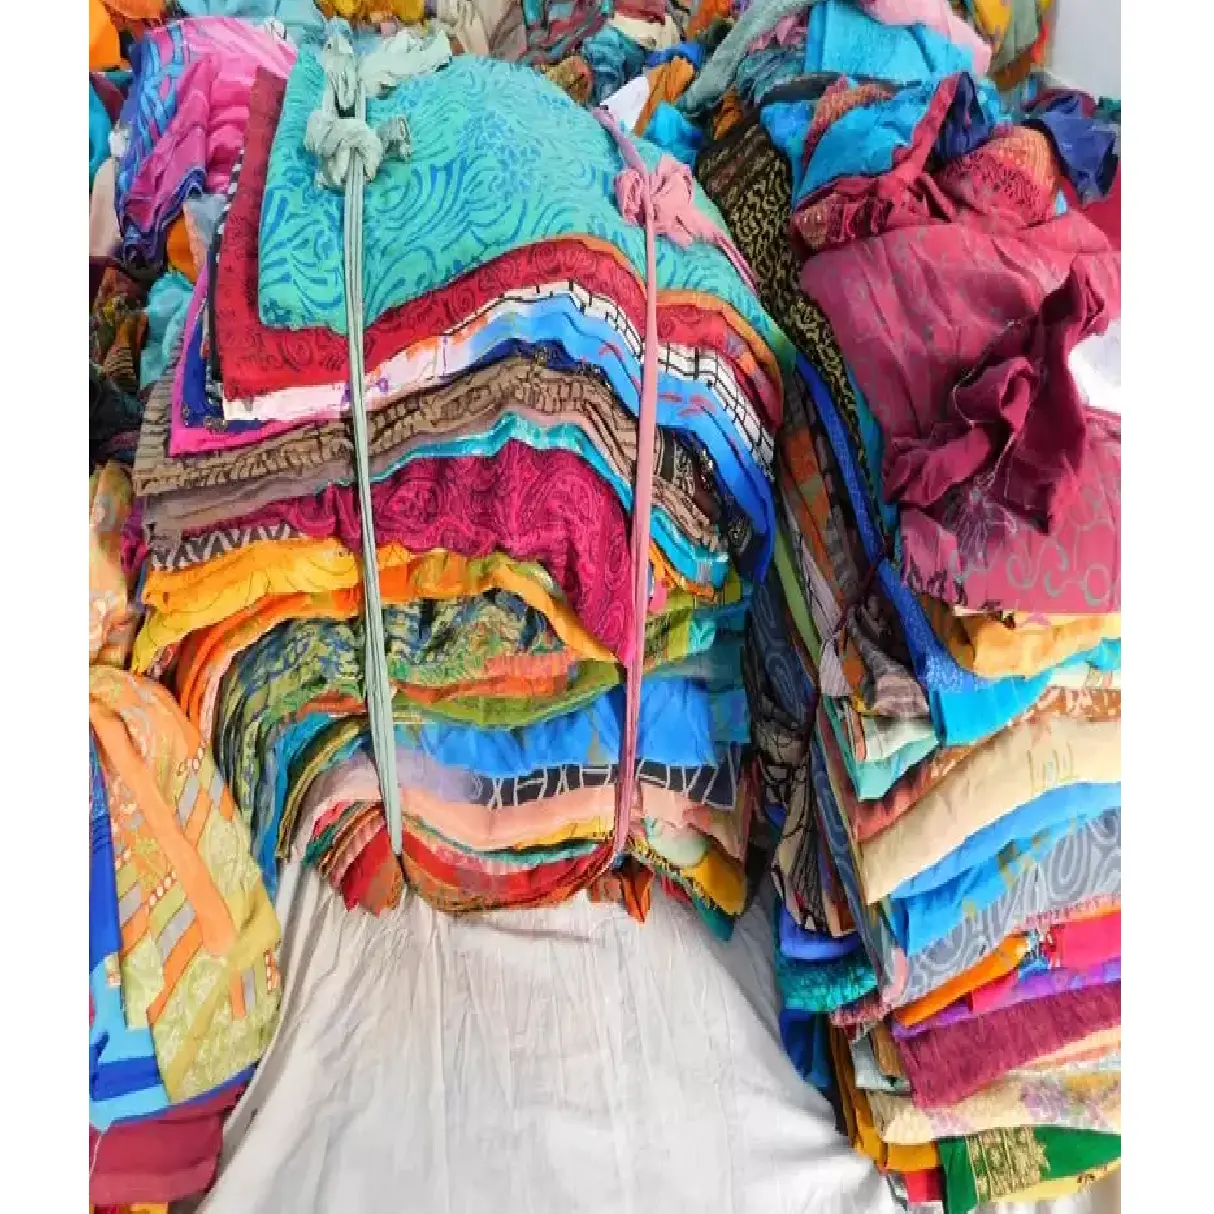 Ấn Độ Bán Buôn Phụ Nữ Quần Áo Ngủ Maxi Gown Đồ Lót Kaftan Kimono Ăn Mặc Làm Vintage Tái Chế Sử Dụng Cũ Crepe Lụa Sari Vải